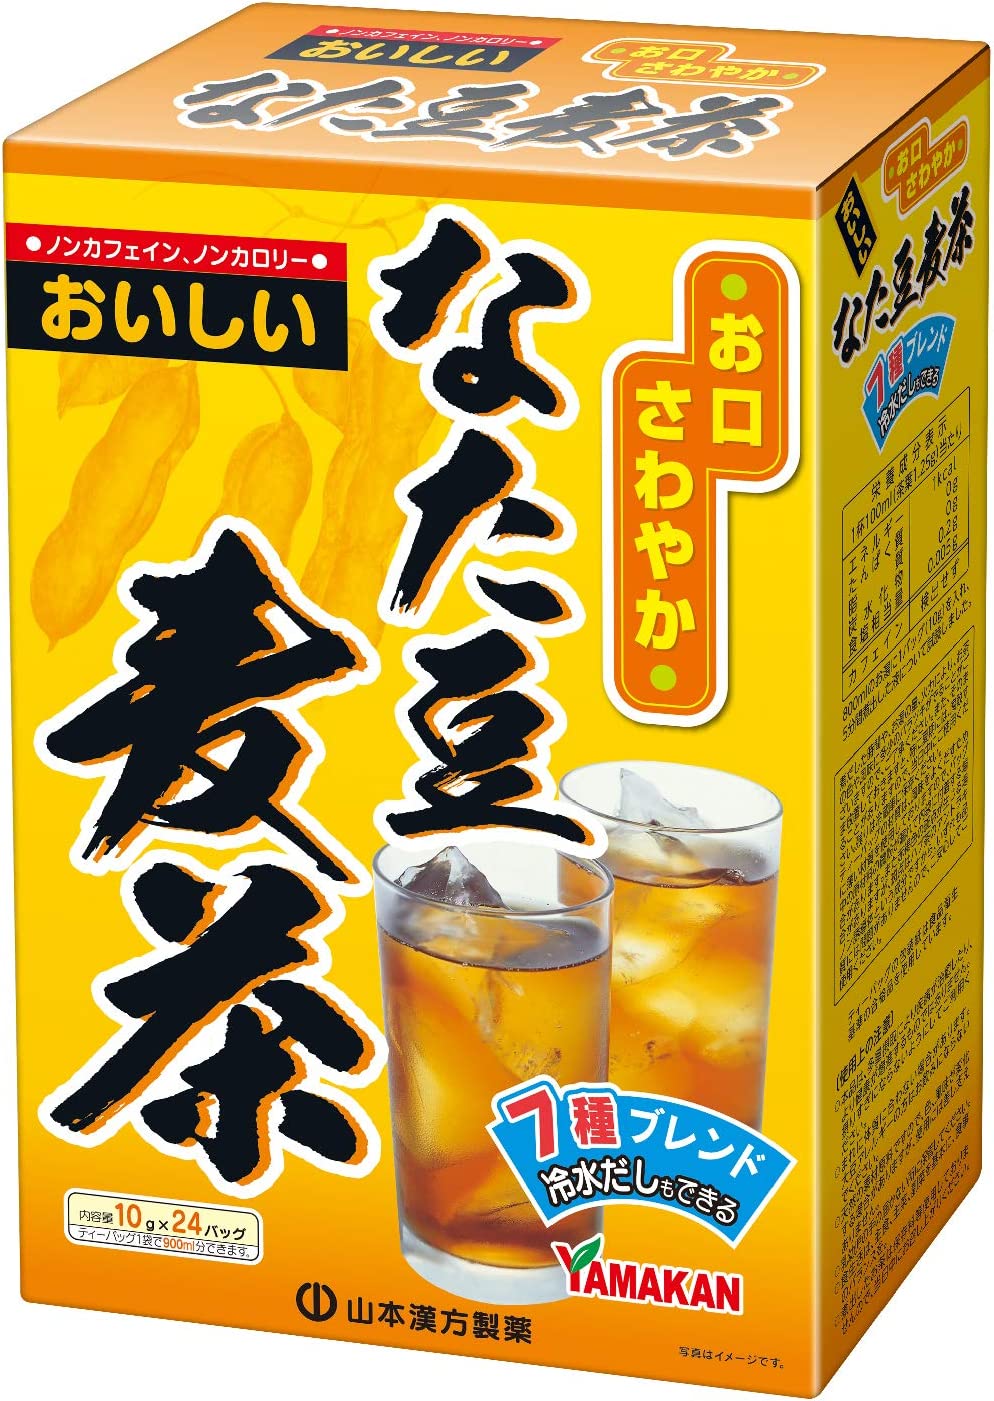 【送料無料】山本漢方 なた豆麦茶 〈ティーバッグ〉 10g×24包